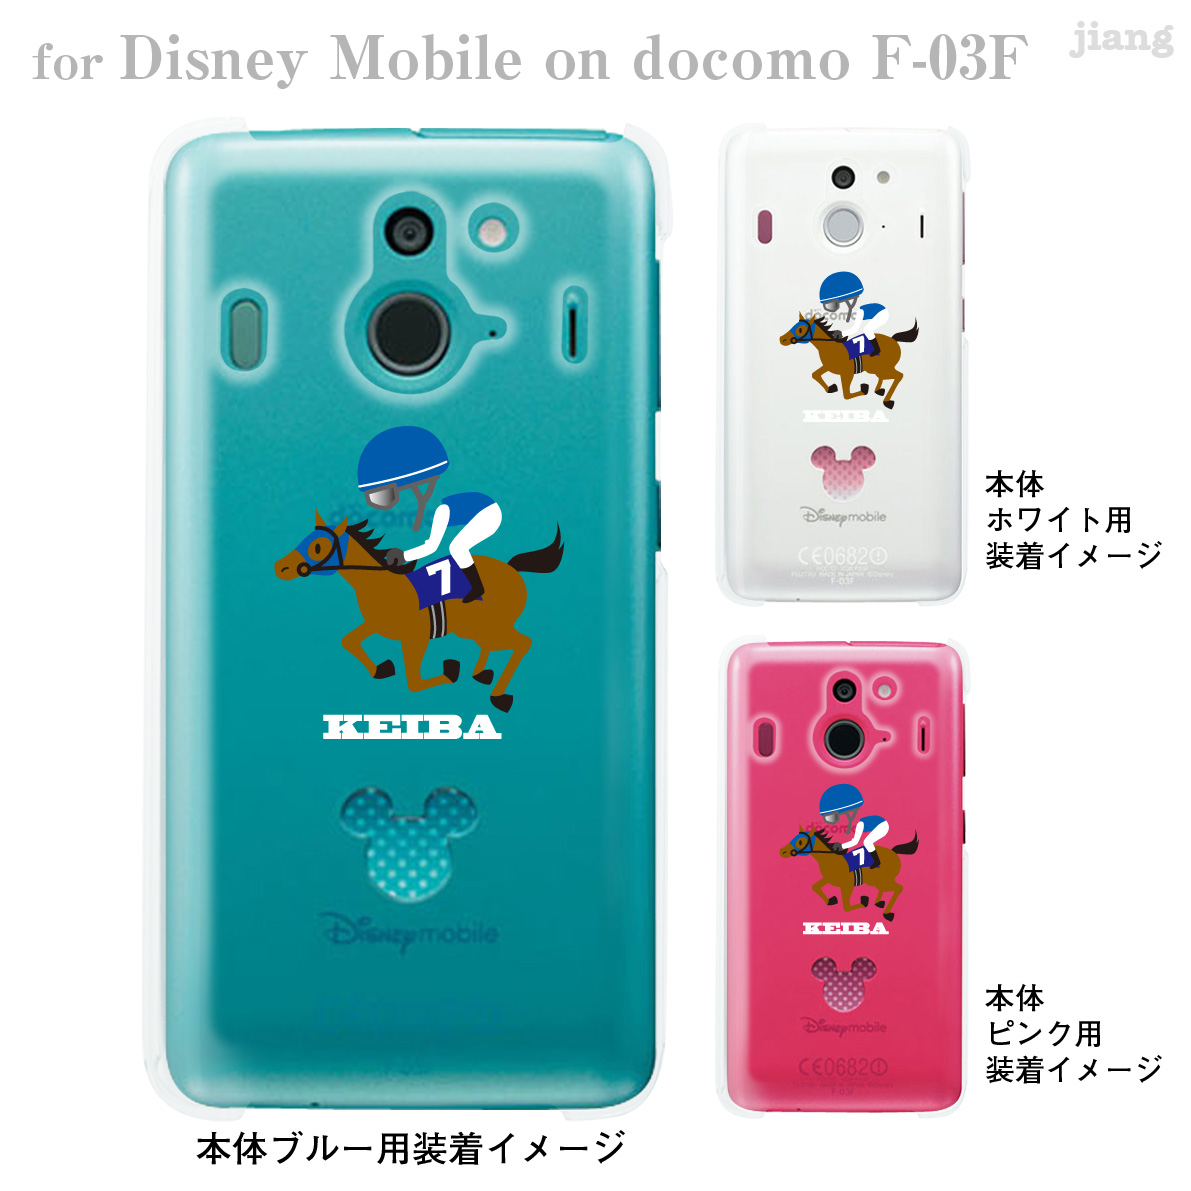 楽天市場 Disney Mobile On Docomo F 03f F03f ケース カバー スマホケース クリアケース ディズニー Clear Arts Keiba 競馬 10 F03f Ca0098 Jiangプラス